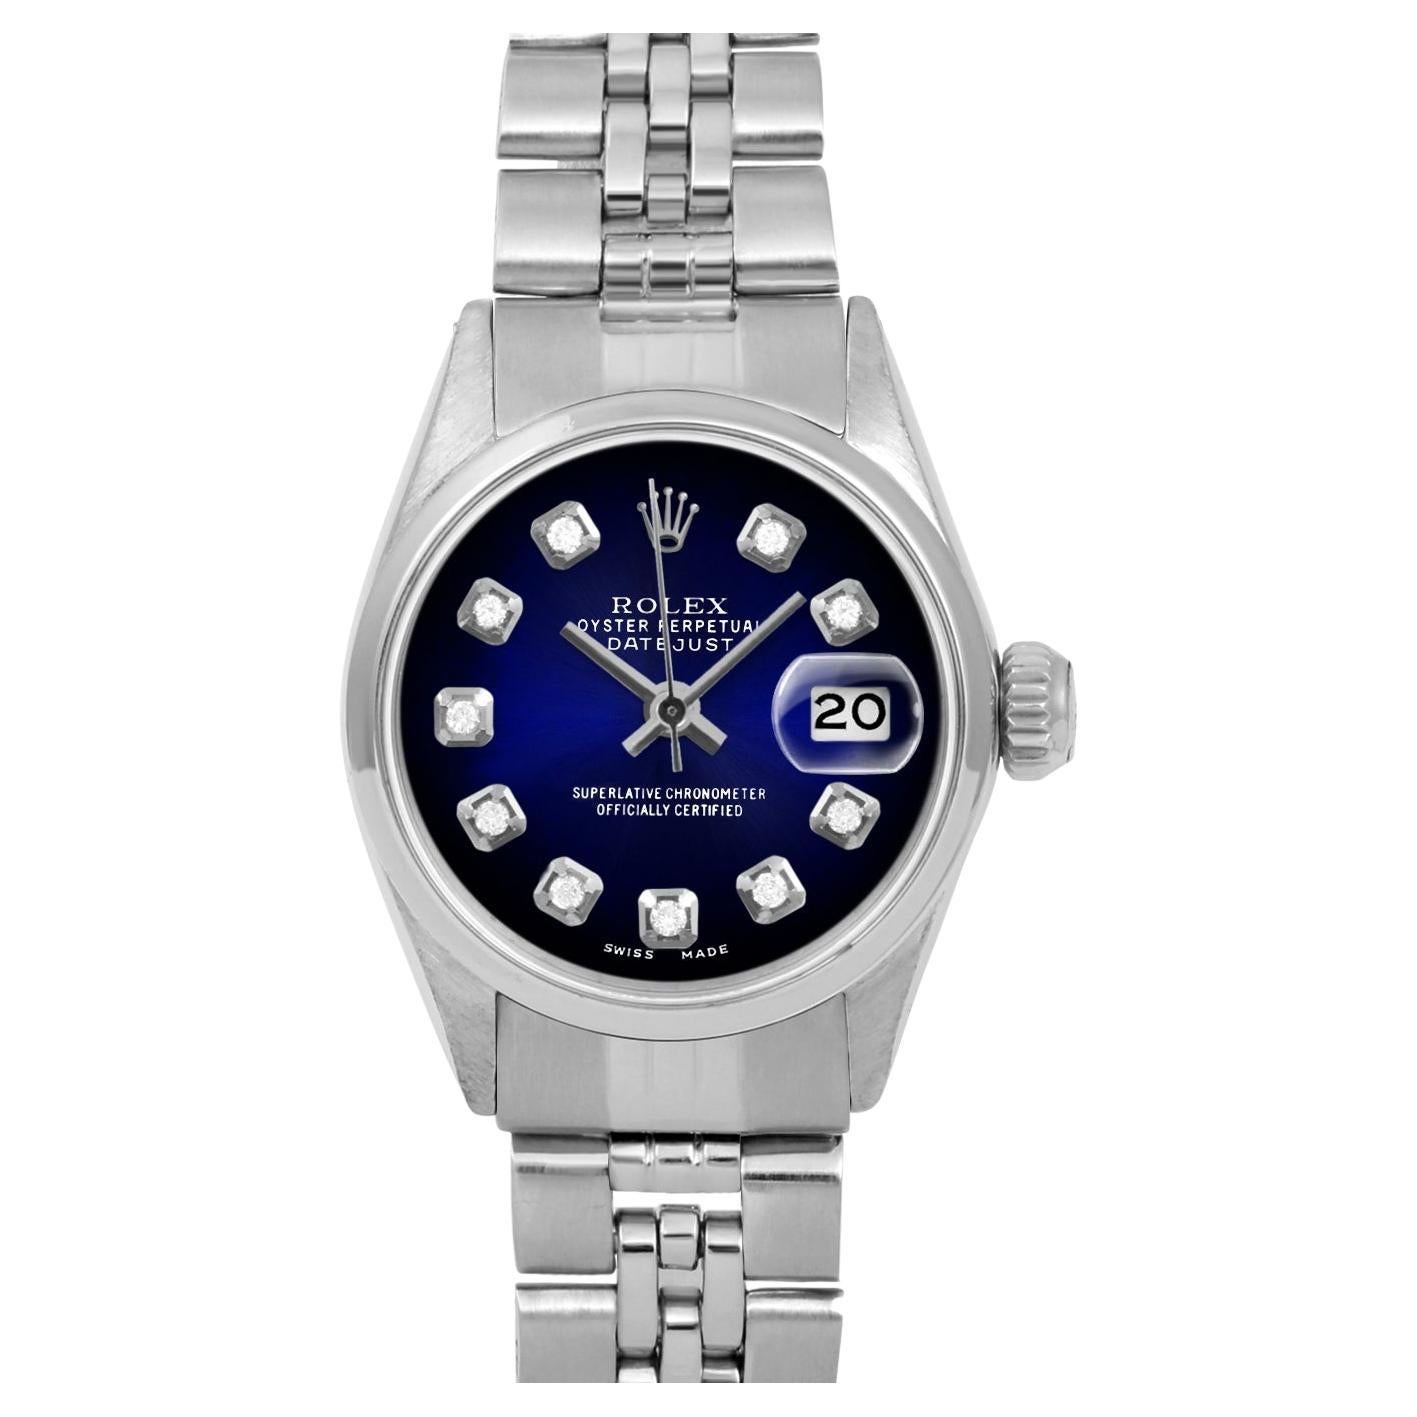 Rolex Montre pour femmes SS Datejust bleu Vignette avec cadran diamanté, anniversaire